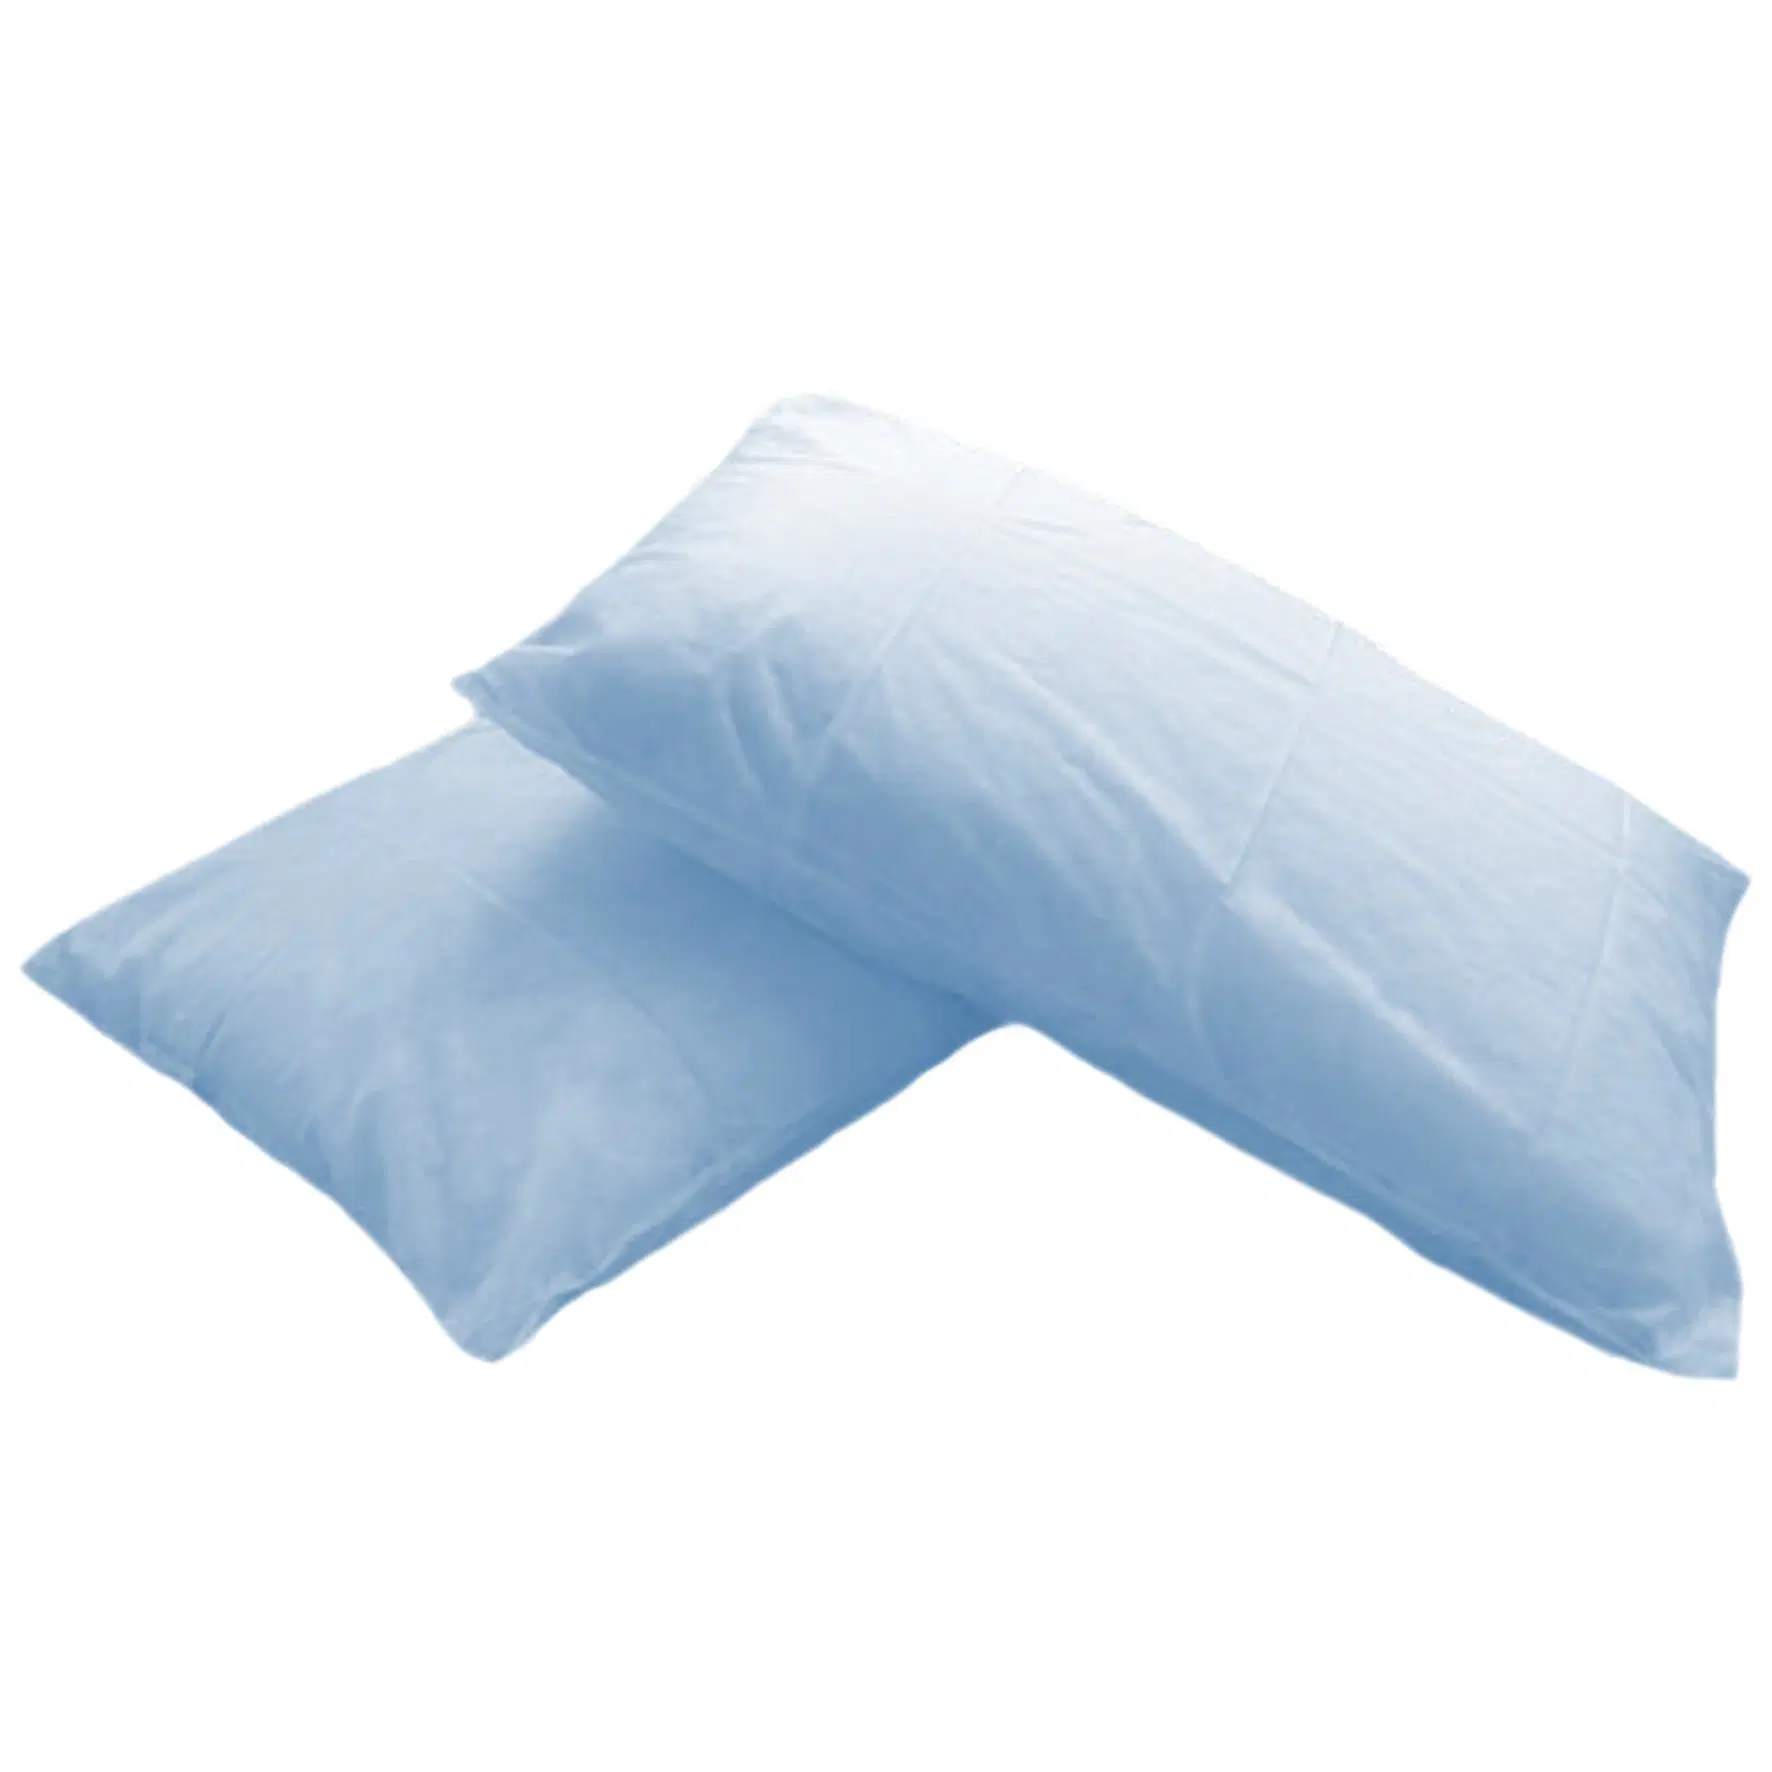 Cubierta de la almohada de plástico desechables resistente al agua para el hospital y un salón de belleza